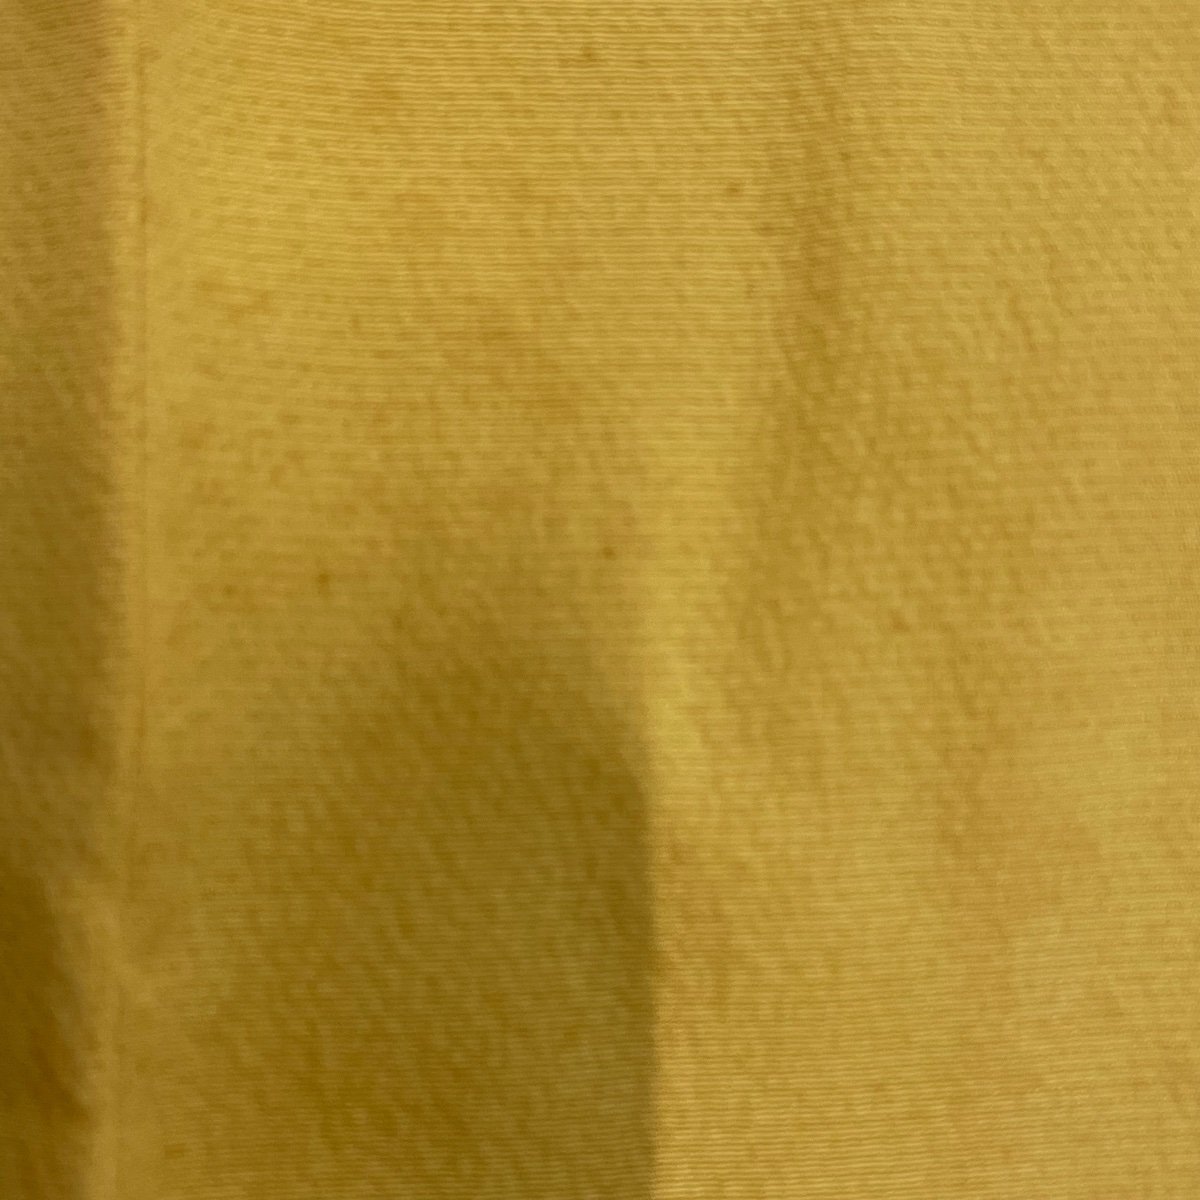 振袖 身丈155.5cm 裄丈64cm M 袷 花鳥 蛇籠 黄色 正絹 秀品 【中古】_バイセル 14087_5